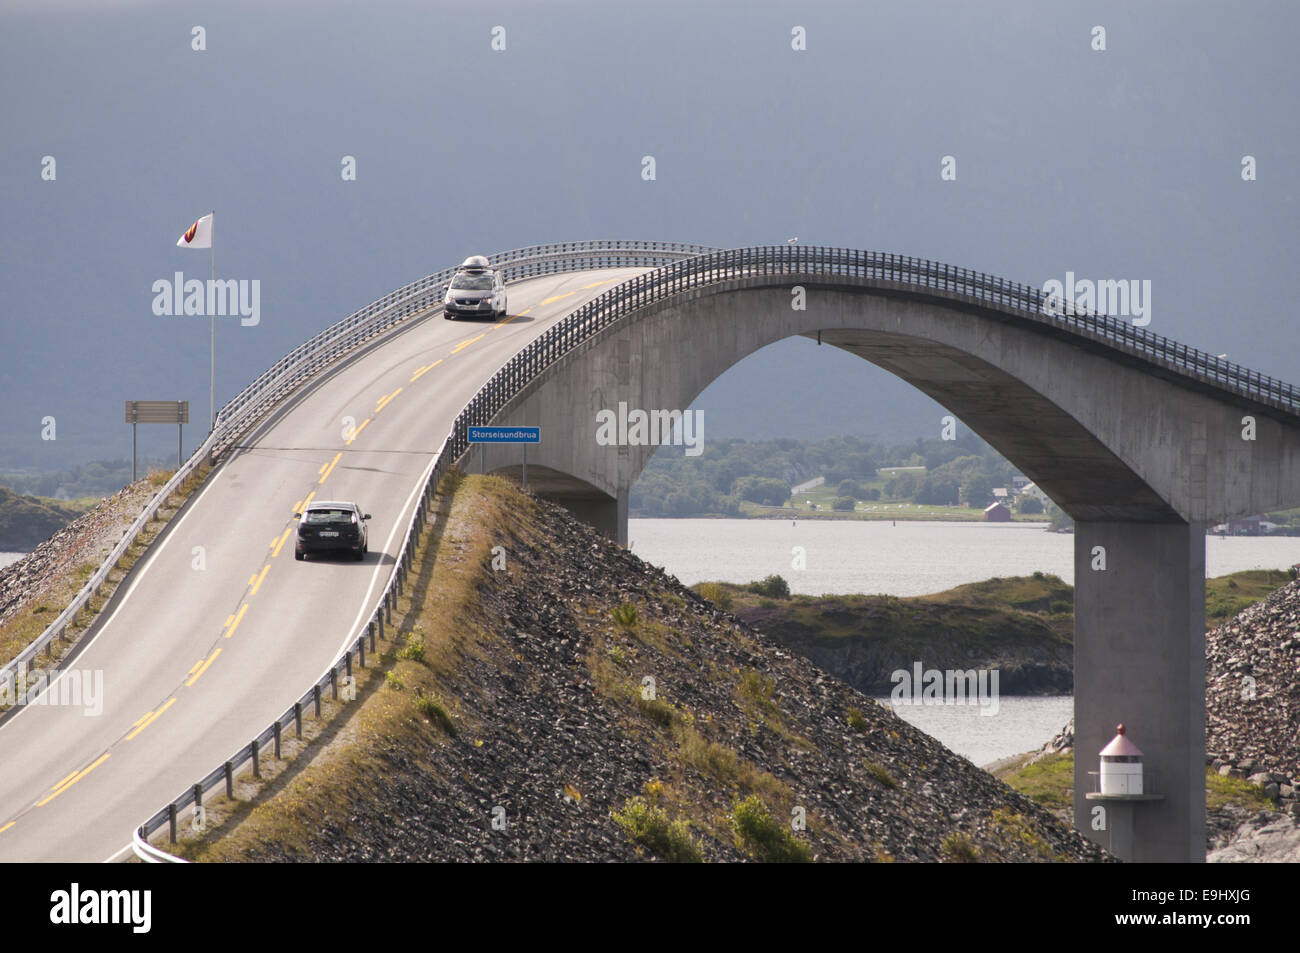 Wahrzeichen: Die Atlantikstraße, Storseisundbrua, im Westen Norwegens. Eine 36km lange Straße zwischen Kårvåg und Bud mit einer Reihe von Brücken, wie diese. Stockfoto